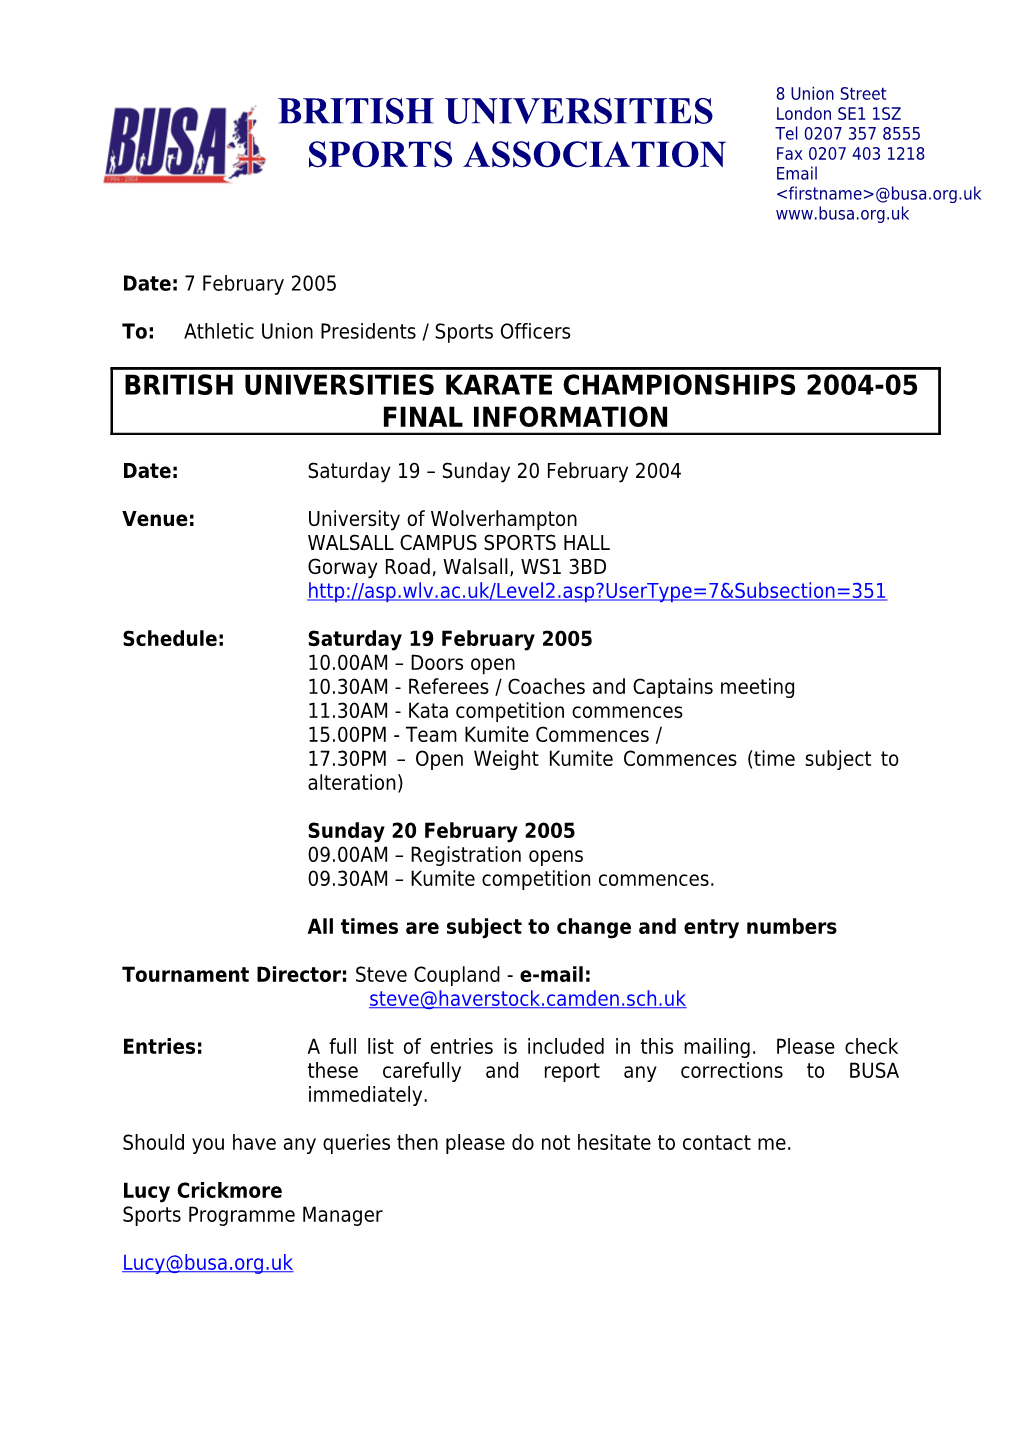 British Universities Karate Championships 2004-05